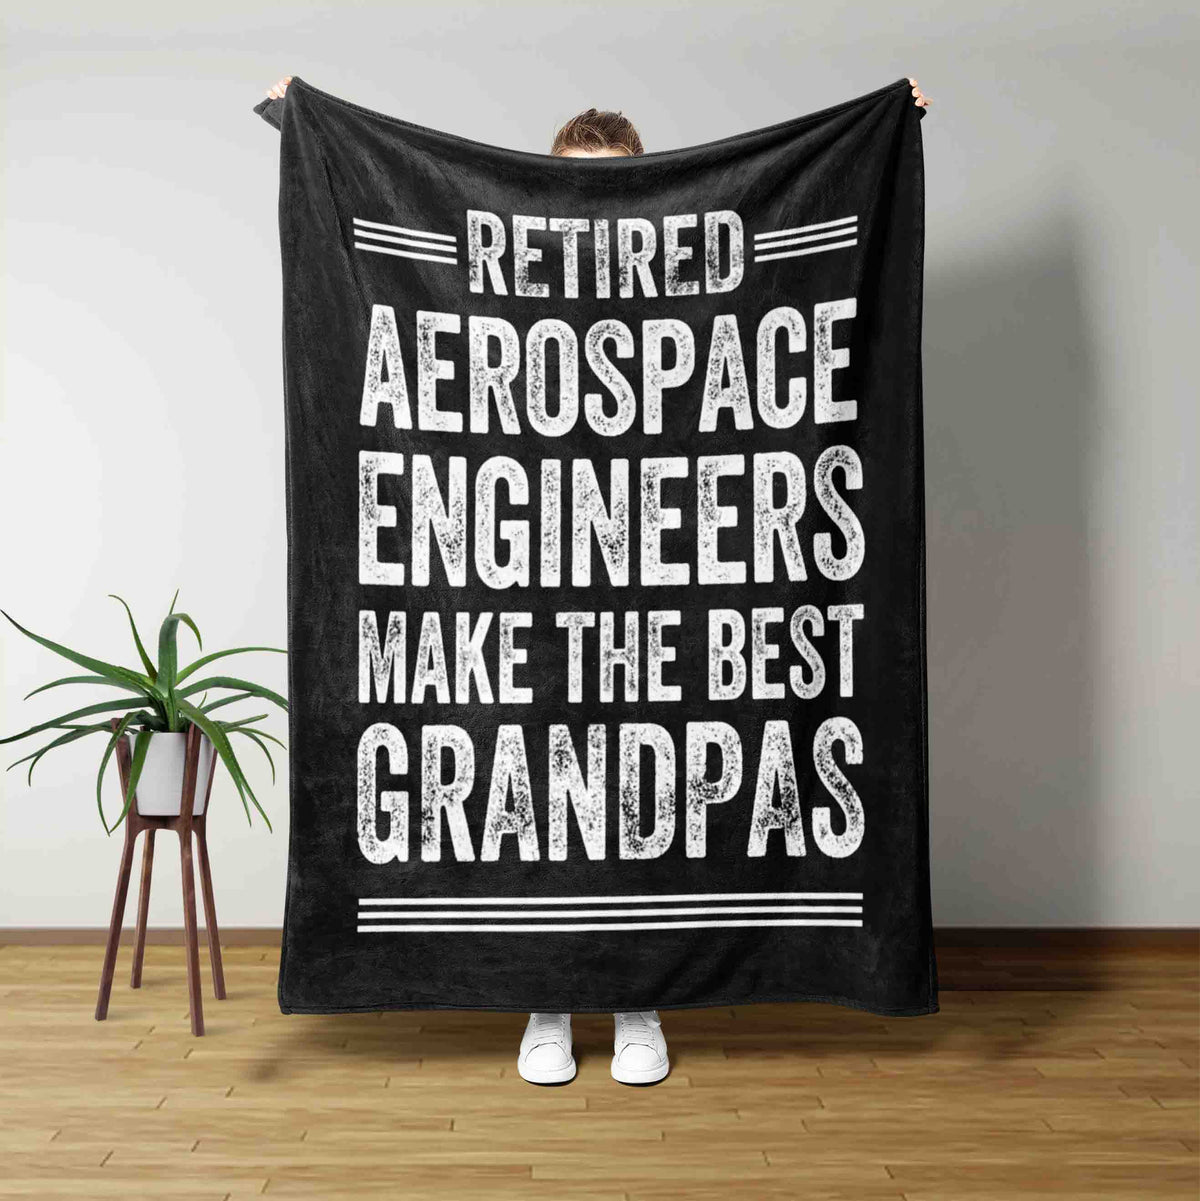 Aerospace Engineers Retirement Blanket, Retired Aerospace Engineers Blanket, Make The Best Grandpas Blanket, Aerospace Engineers Gift, Aerospace Engineers Lover Blanket